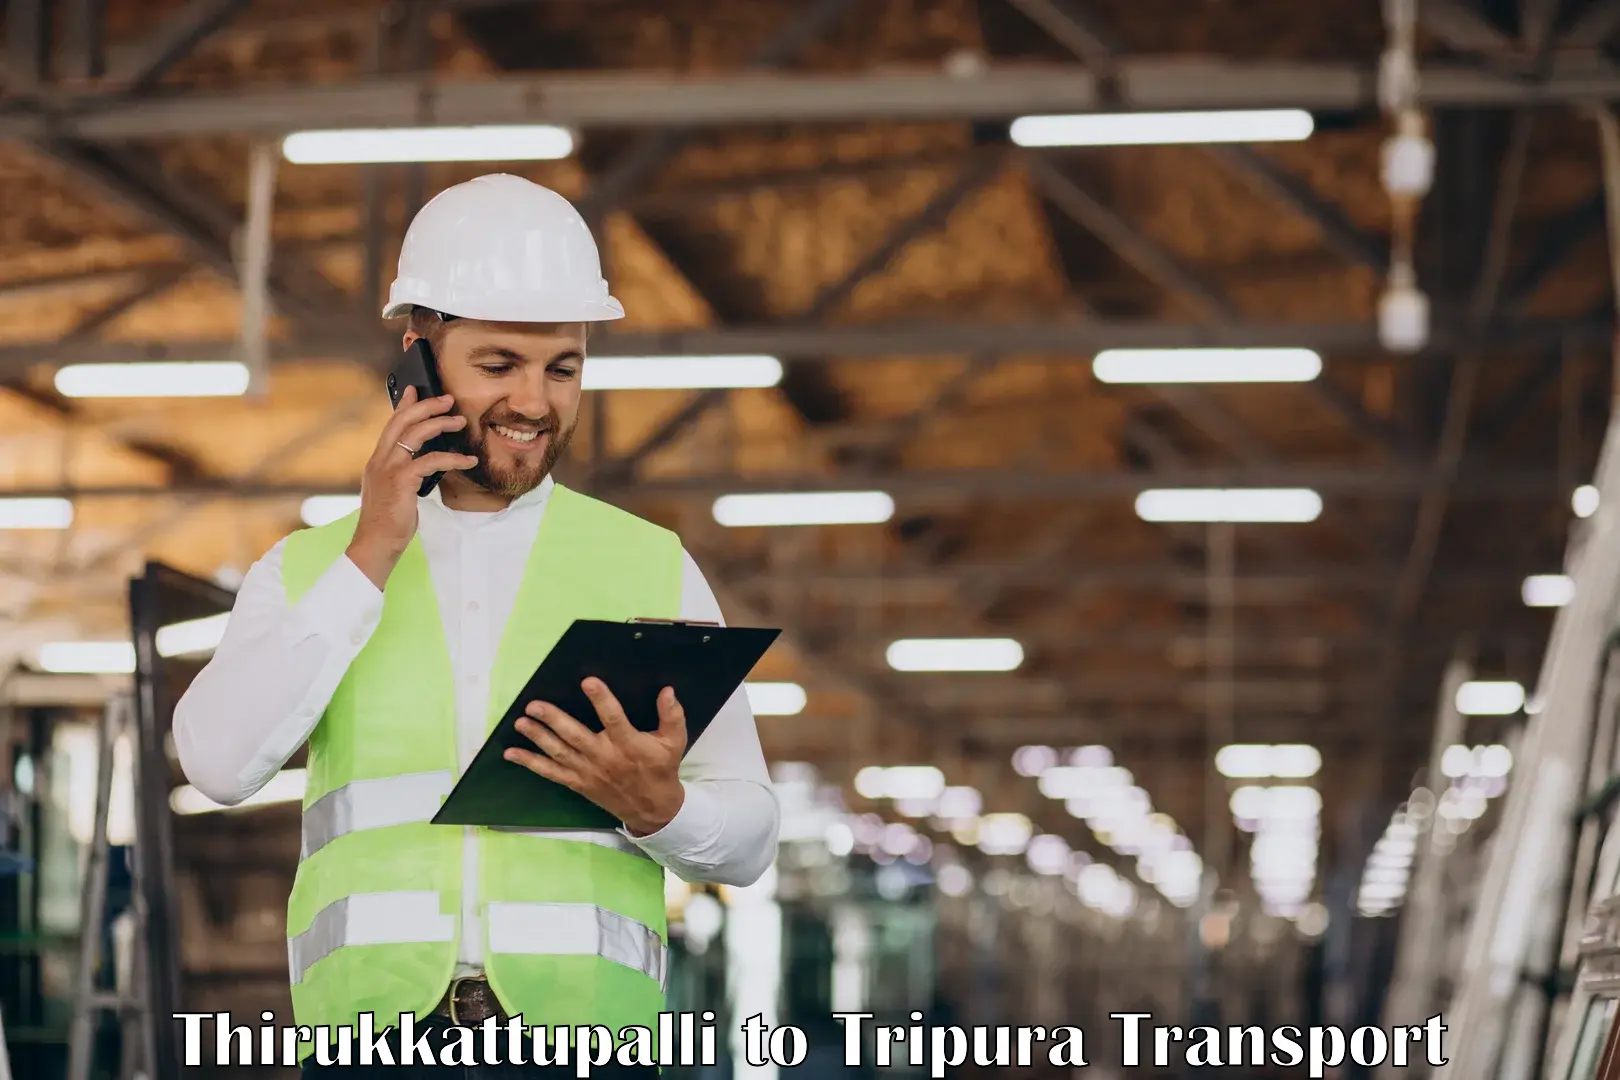 Domestic transport services Thirukkattupalli to IIIT Agartala